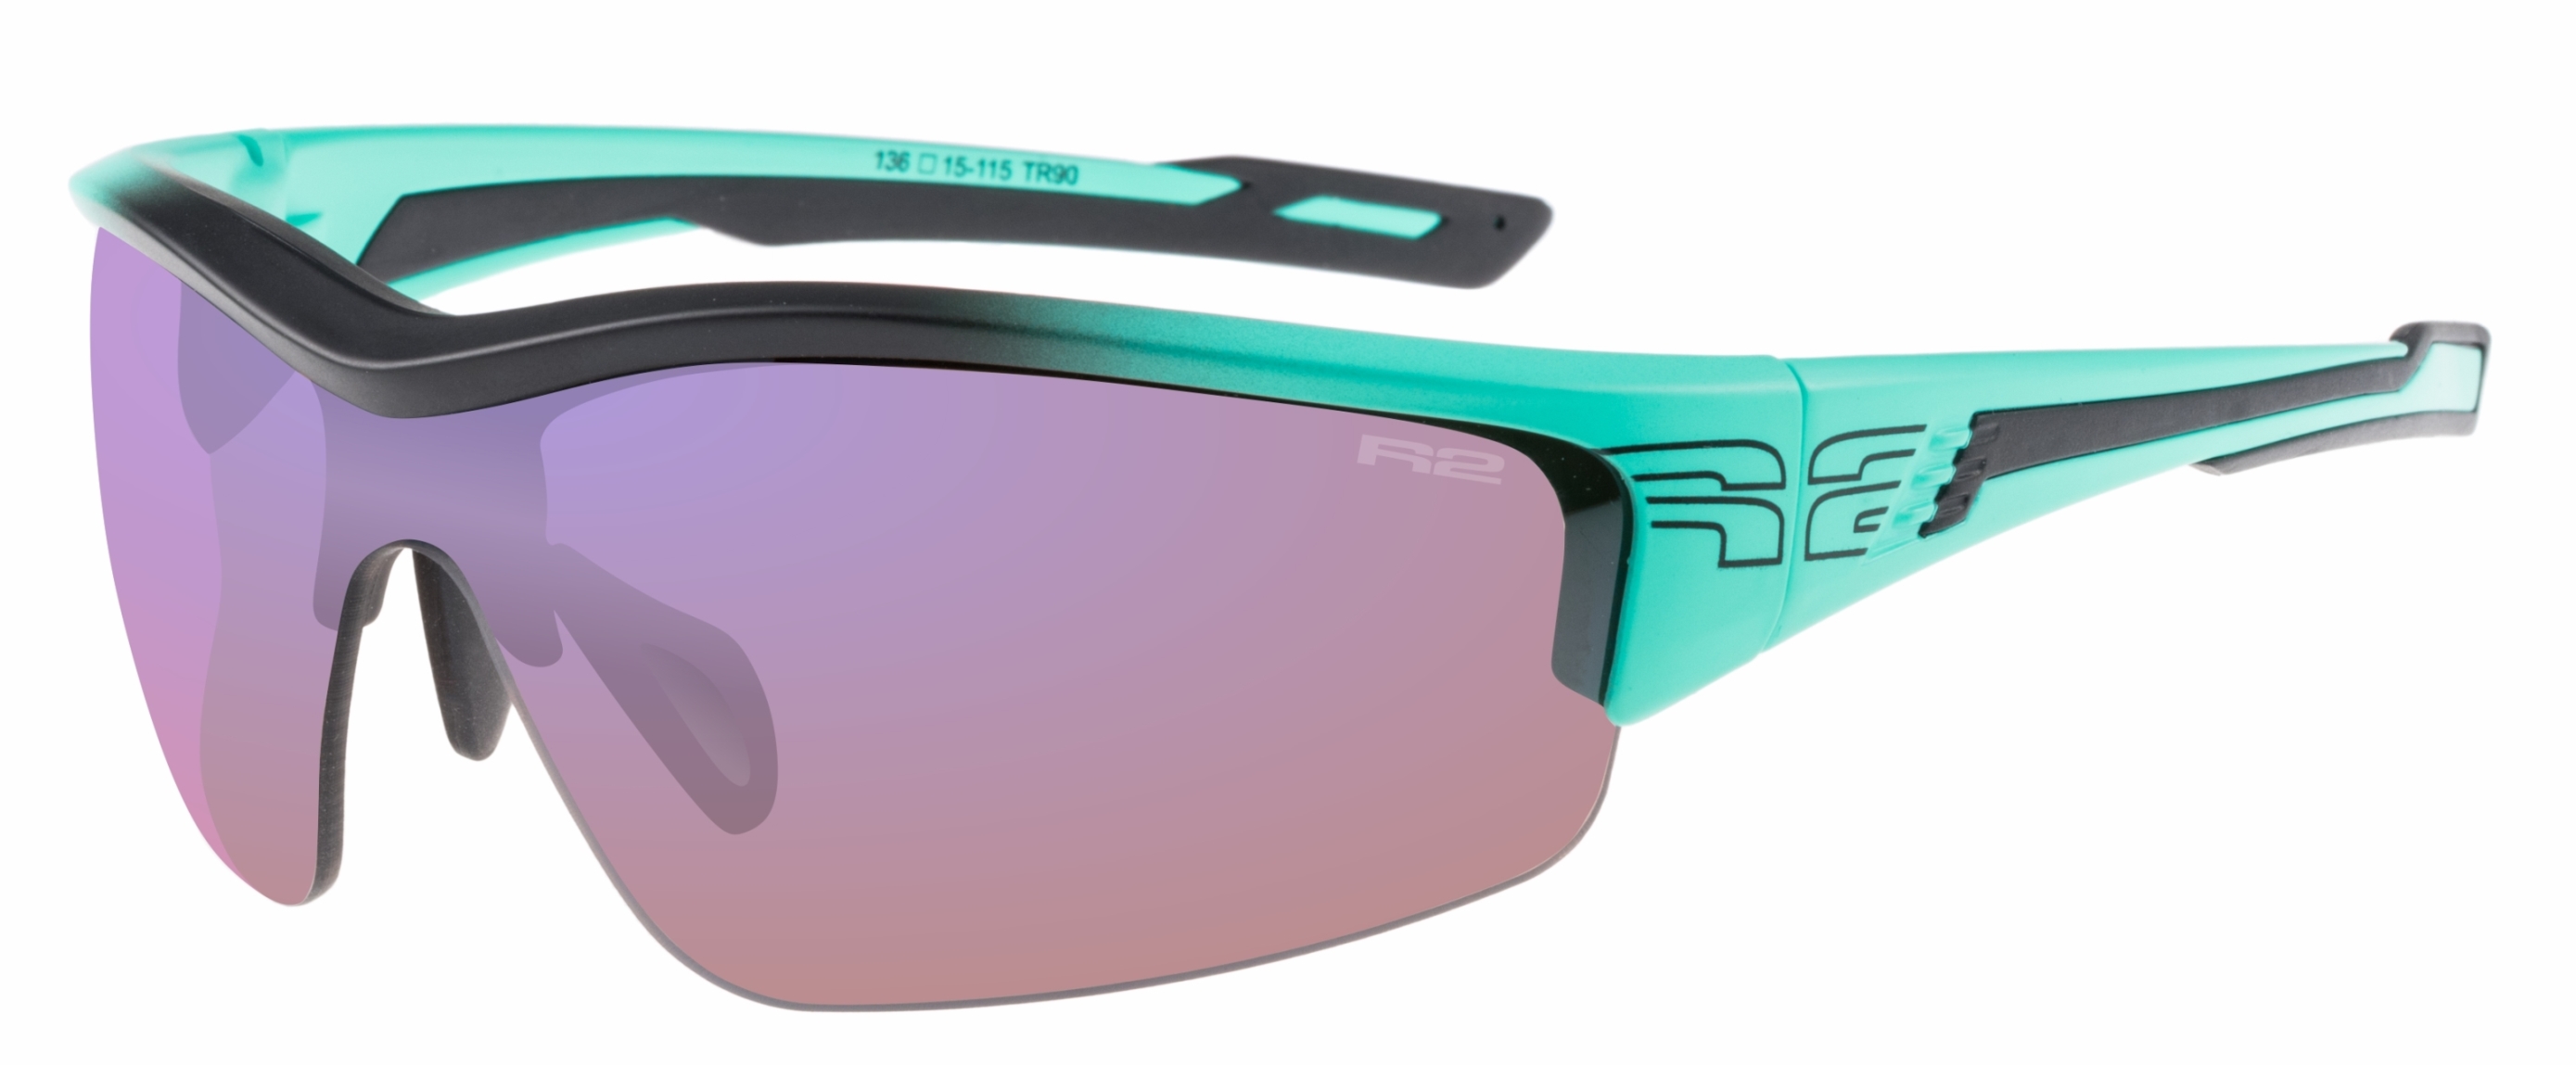 HD sportovní sluneční brýle R2 WHEELLER AT038P - standard